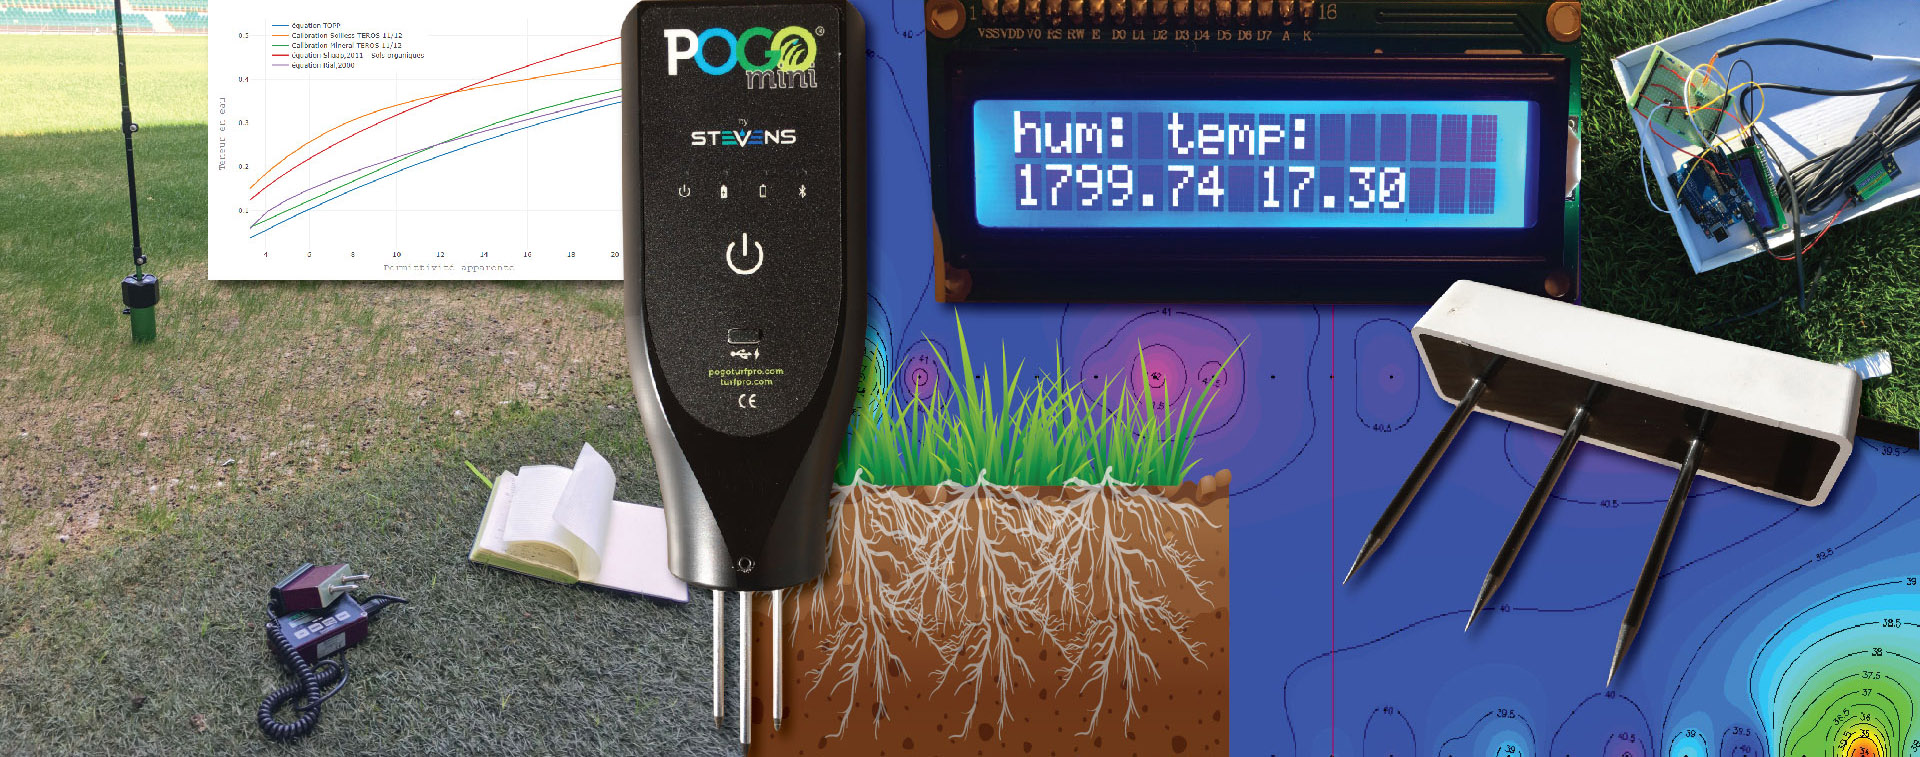 Capteurs de température – mesure haute tension